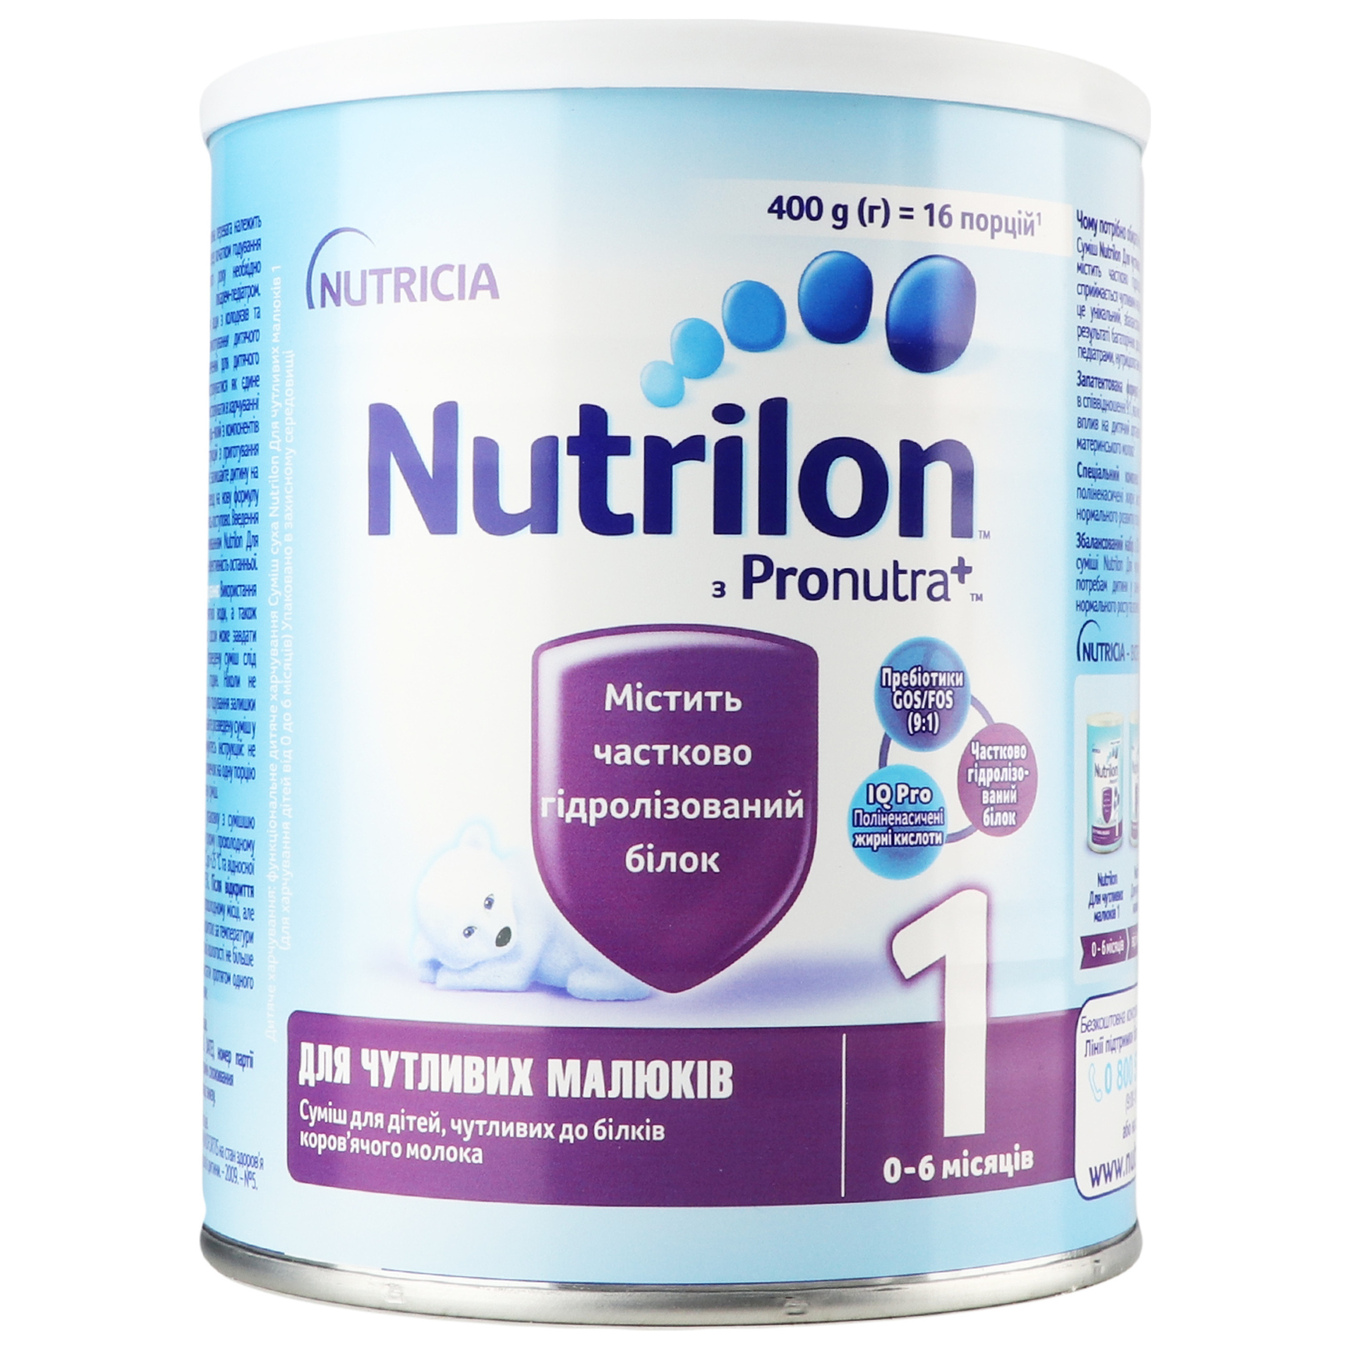 Nutrilon dry milk mixture for sensitive babies 1400g